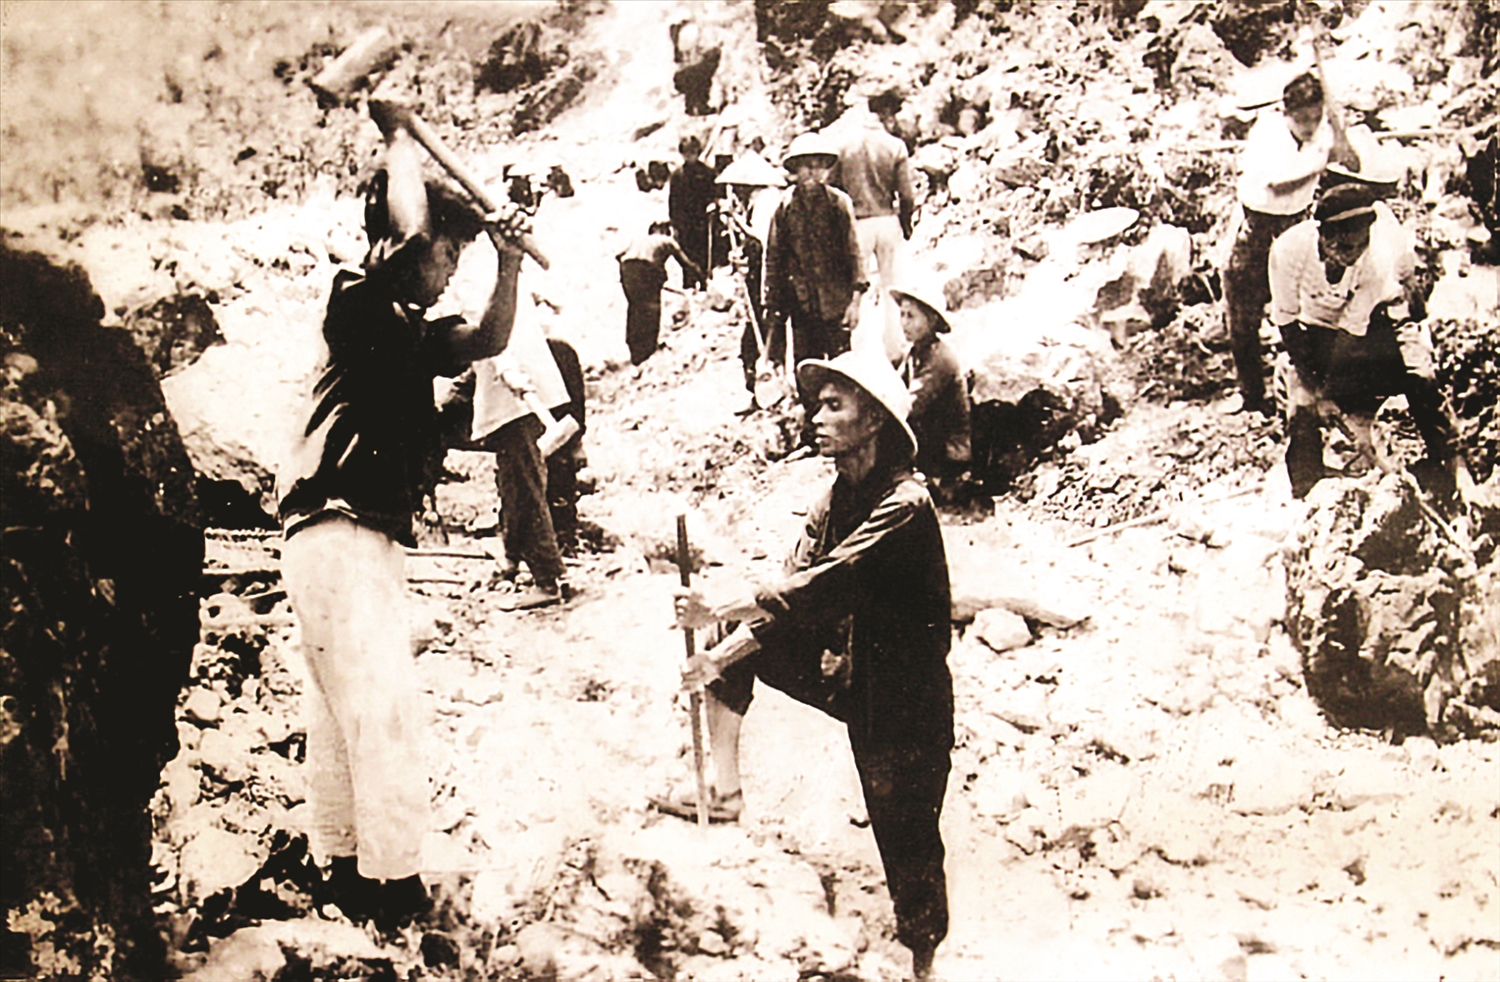 Thanh niên xung phong tay đục, tay choòng phá đá mở đường Hạnh Phúc. Ảnh: Bảo tàng lịch sử Hà Giang